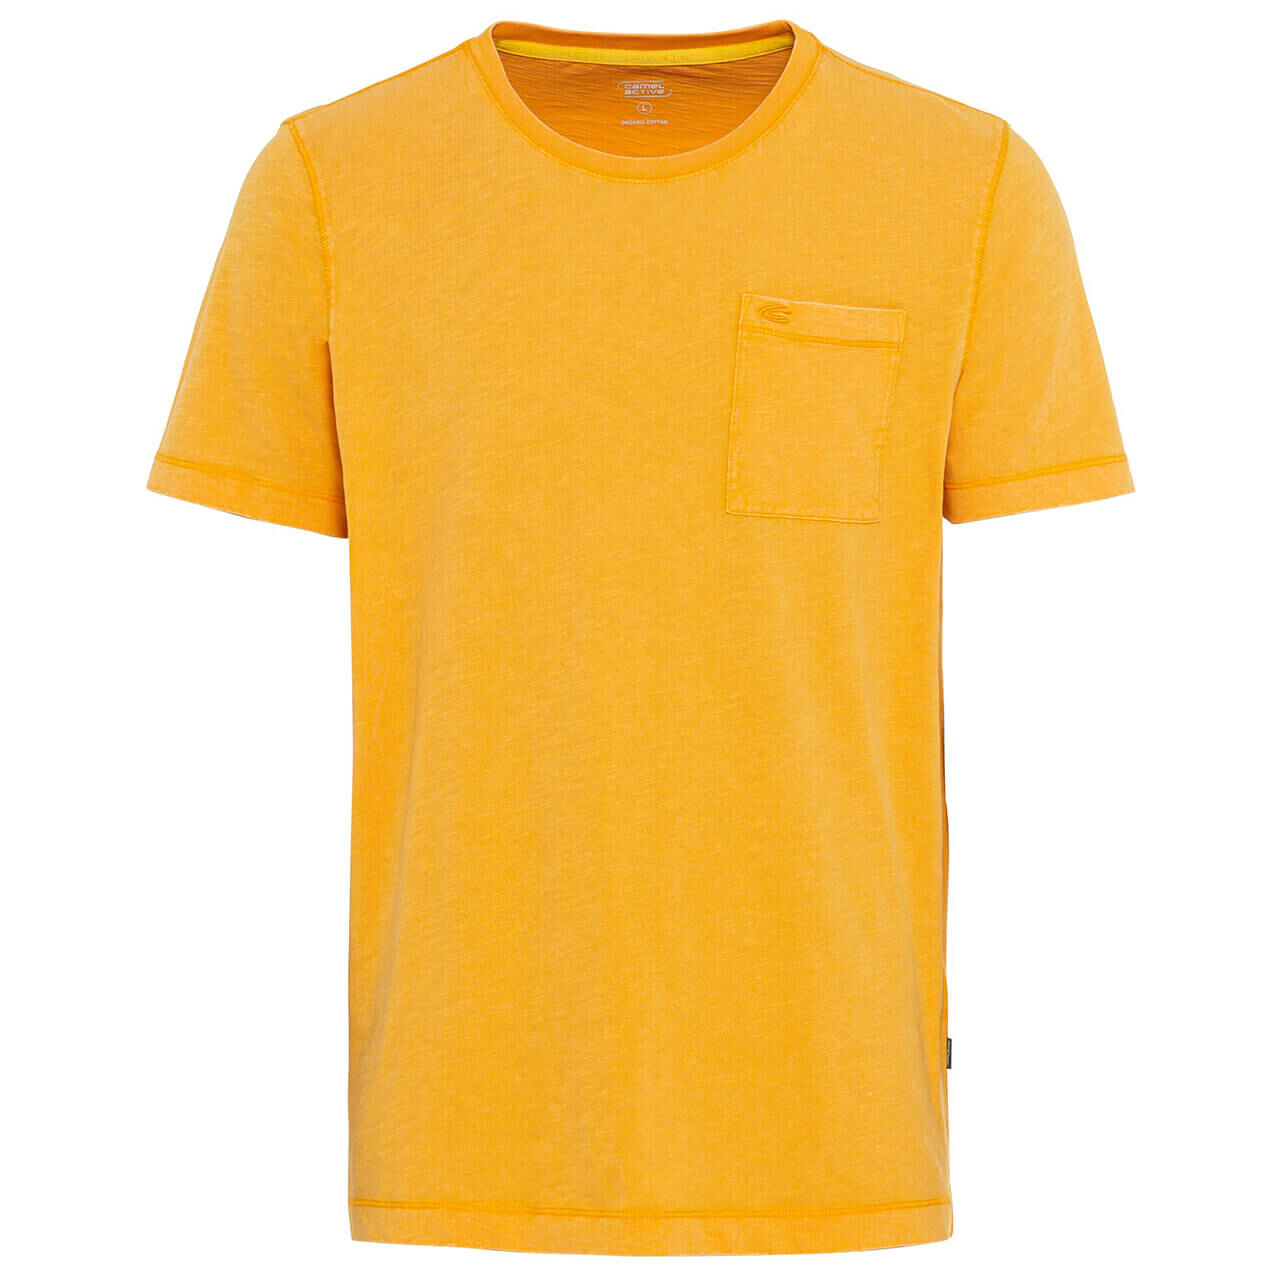 Camel active T-Shirt für Herren in Orange, FarbNr.: 52